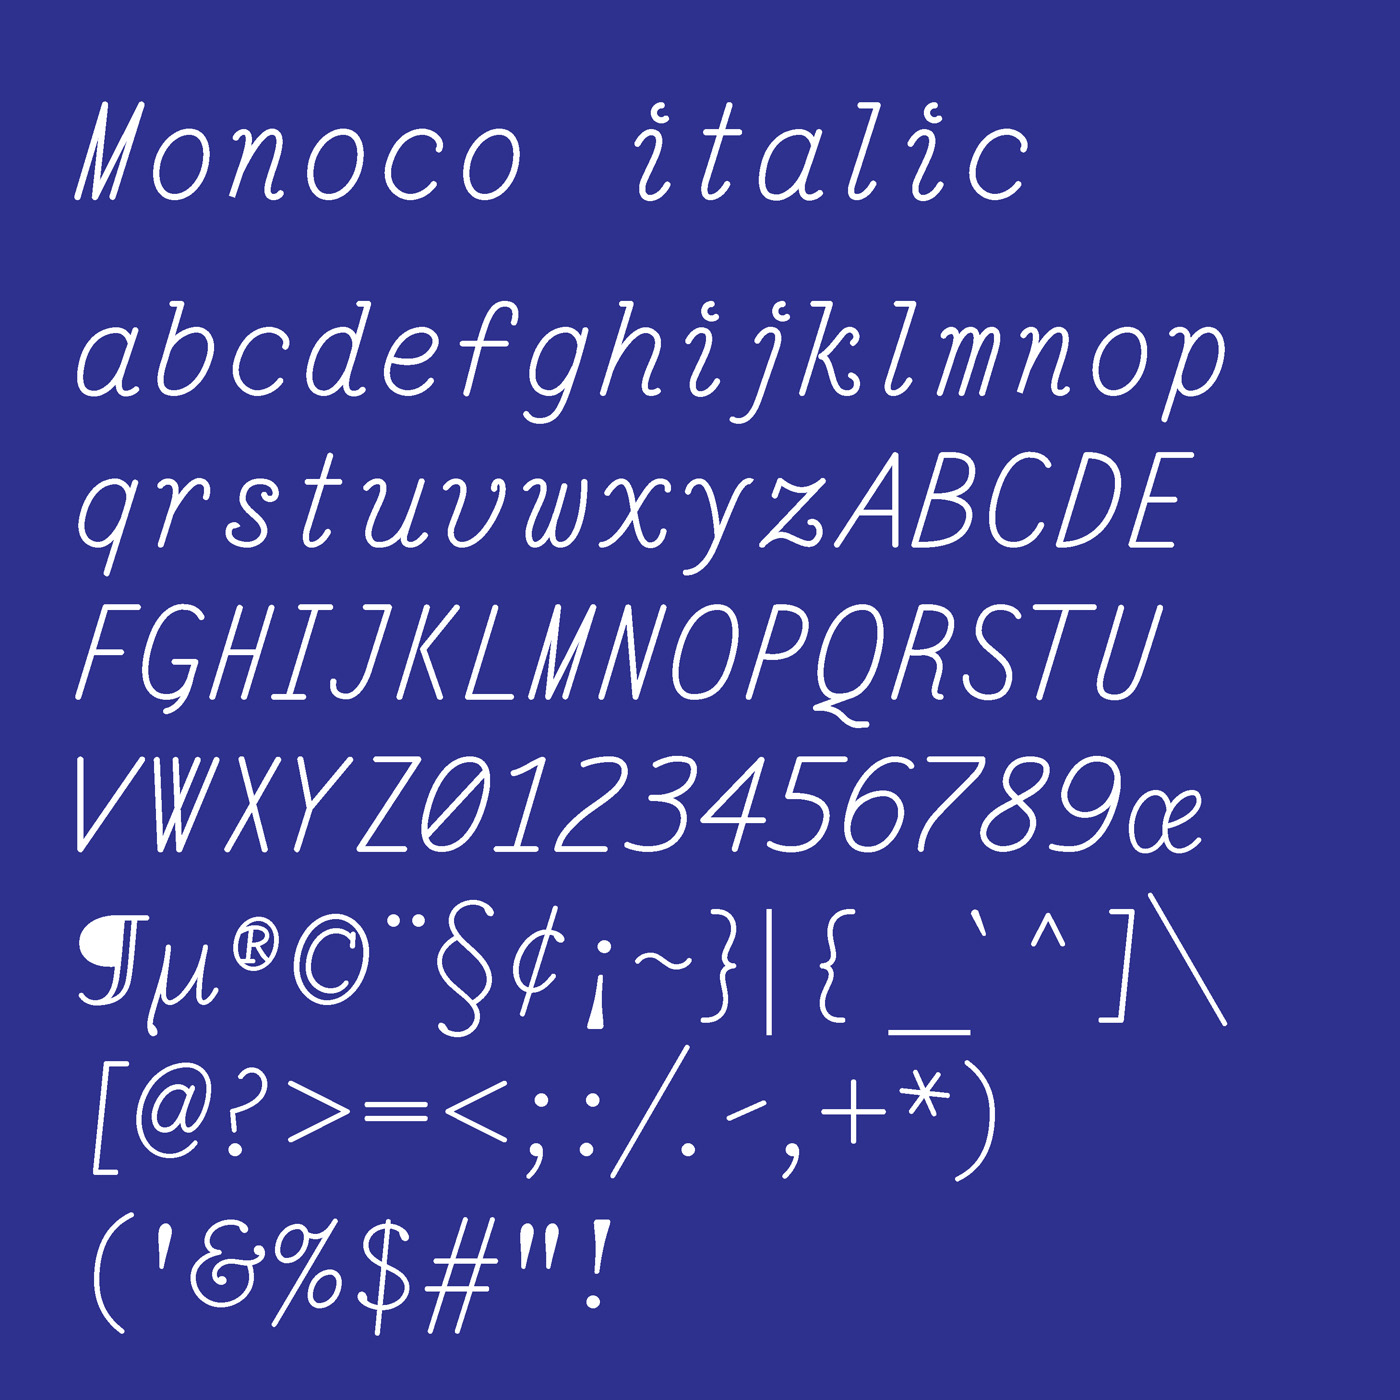 Monoco typeface designed by Thomas Bush